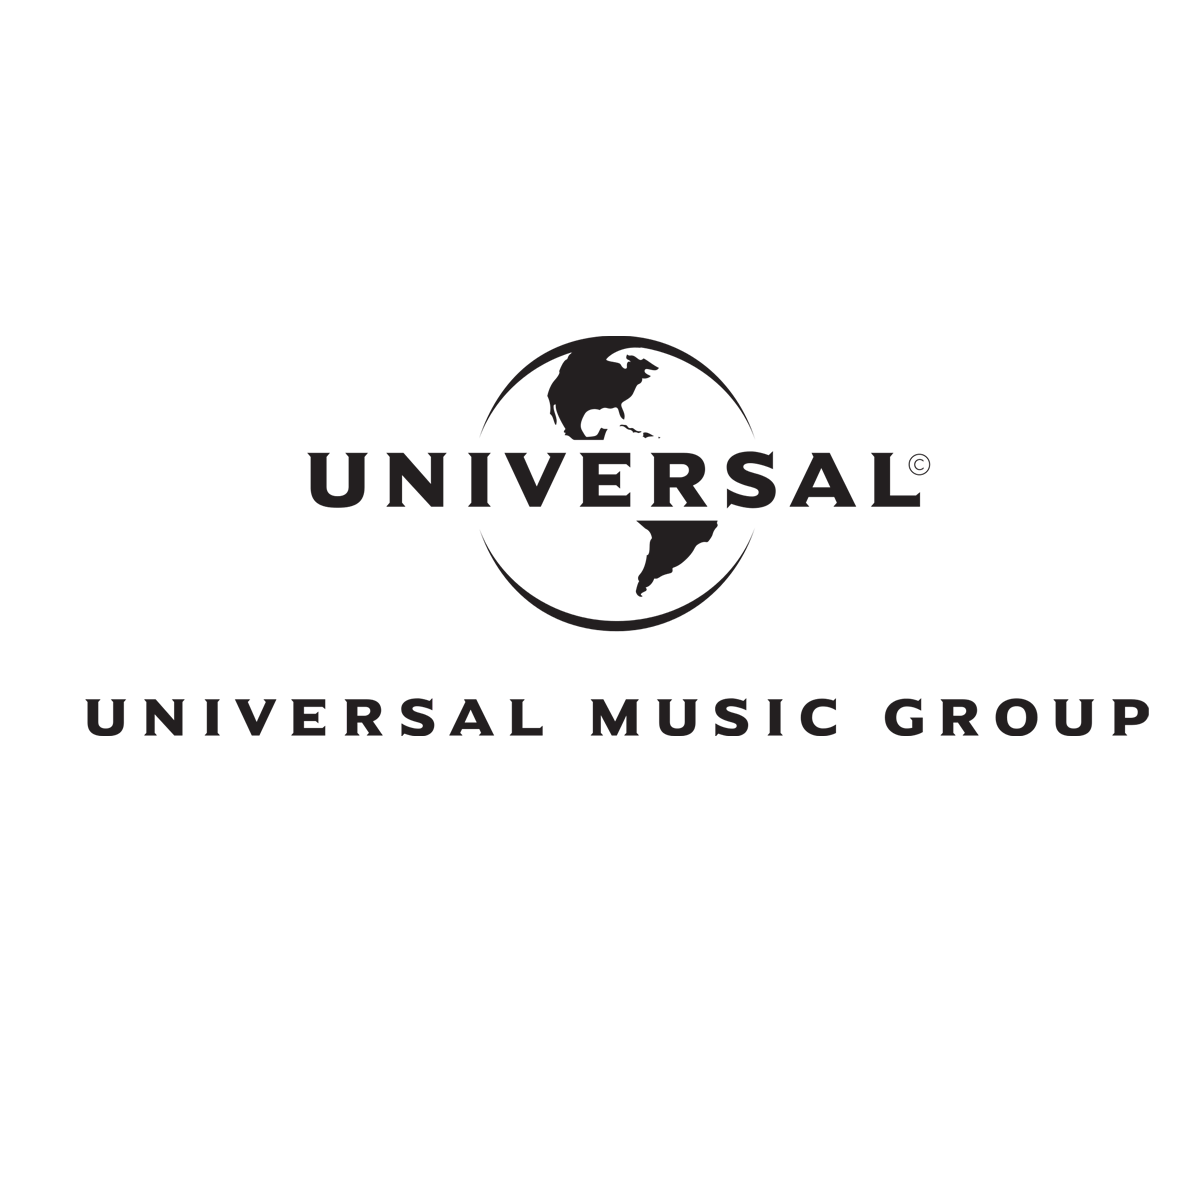 UNIVERSAL : Als Medienproduzent hat Matthias unzählige Dokumentationen für Universals Youtube Jugendsender „Digster Pop“ produziert - unter anderen für Ariana Grande, Tayler Swift und Shawn Mendes.